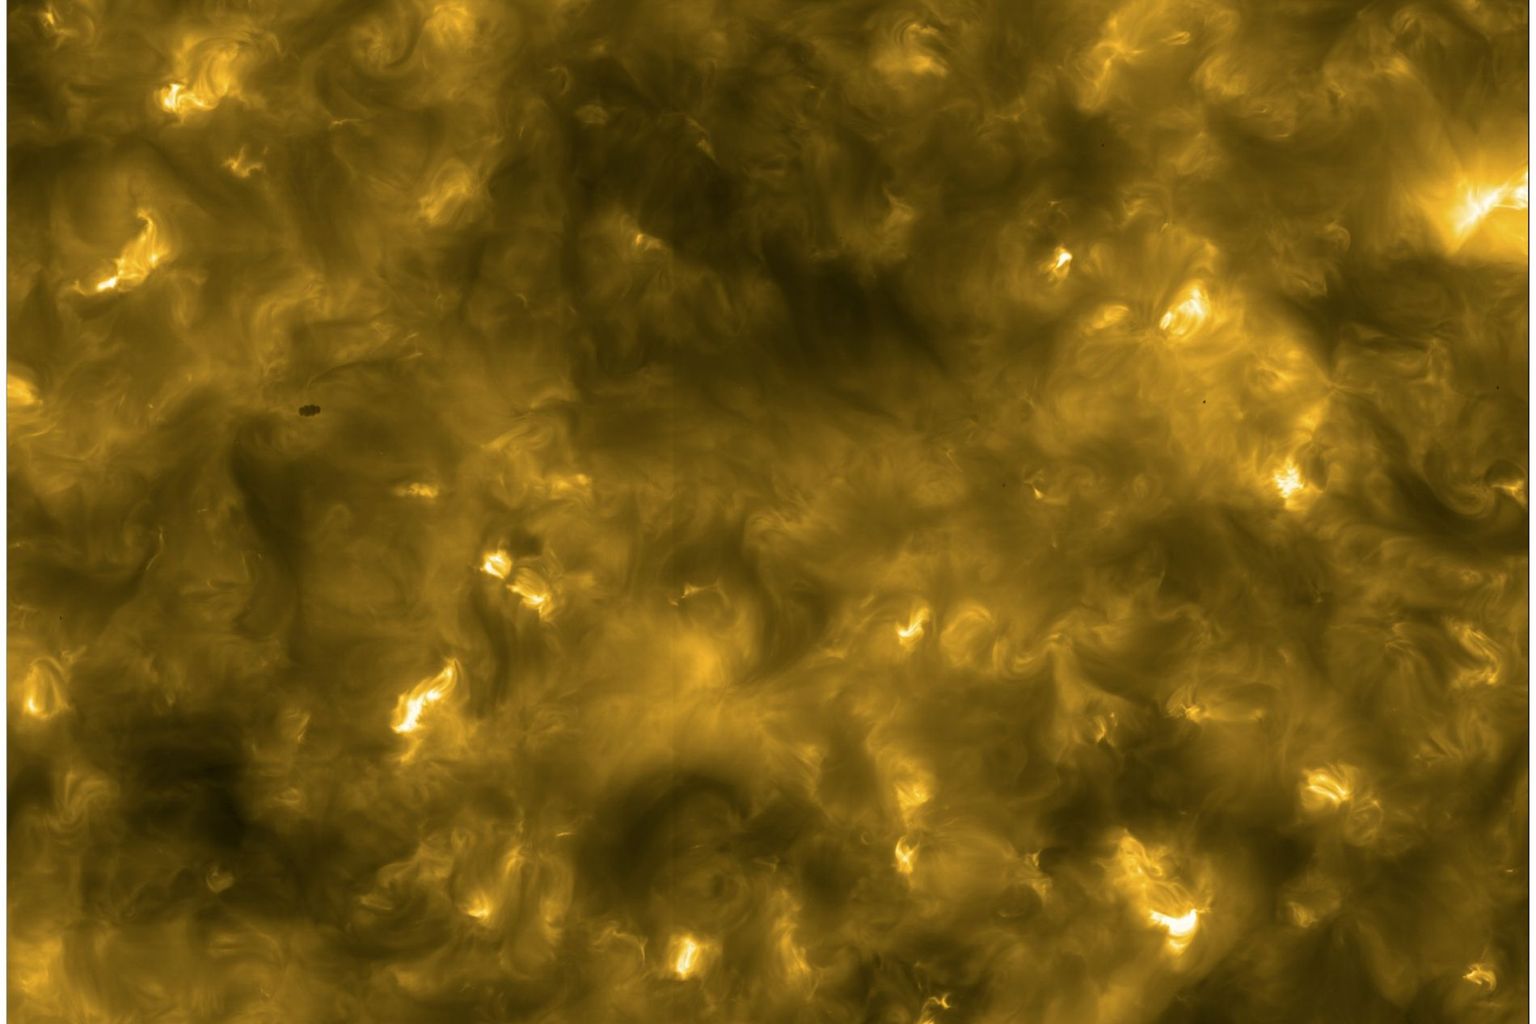 Image de l'atmosphère extérieure du Soleil prise par le satellite Solar Orbiter.